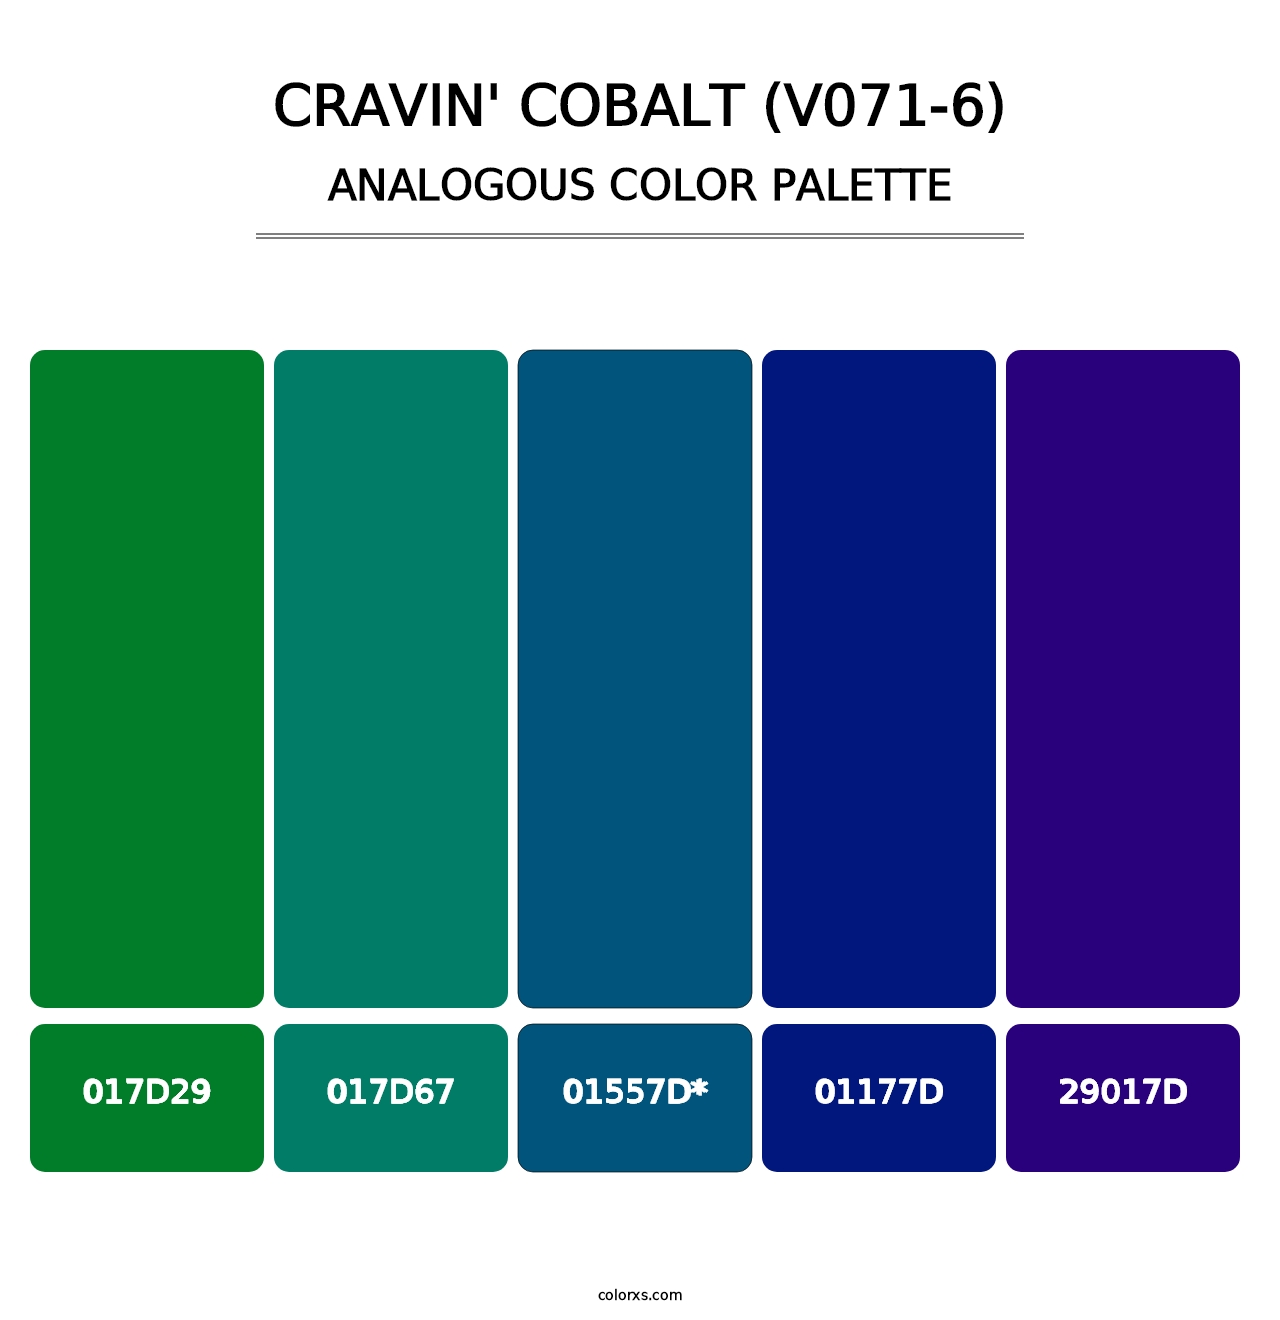 Cravin' Cobalt (V071-6) - Analogous Color Palette